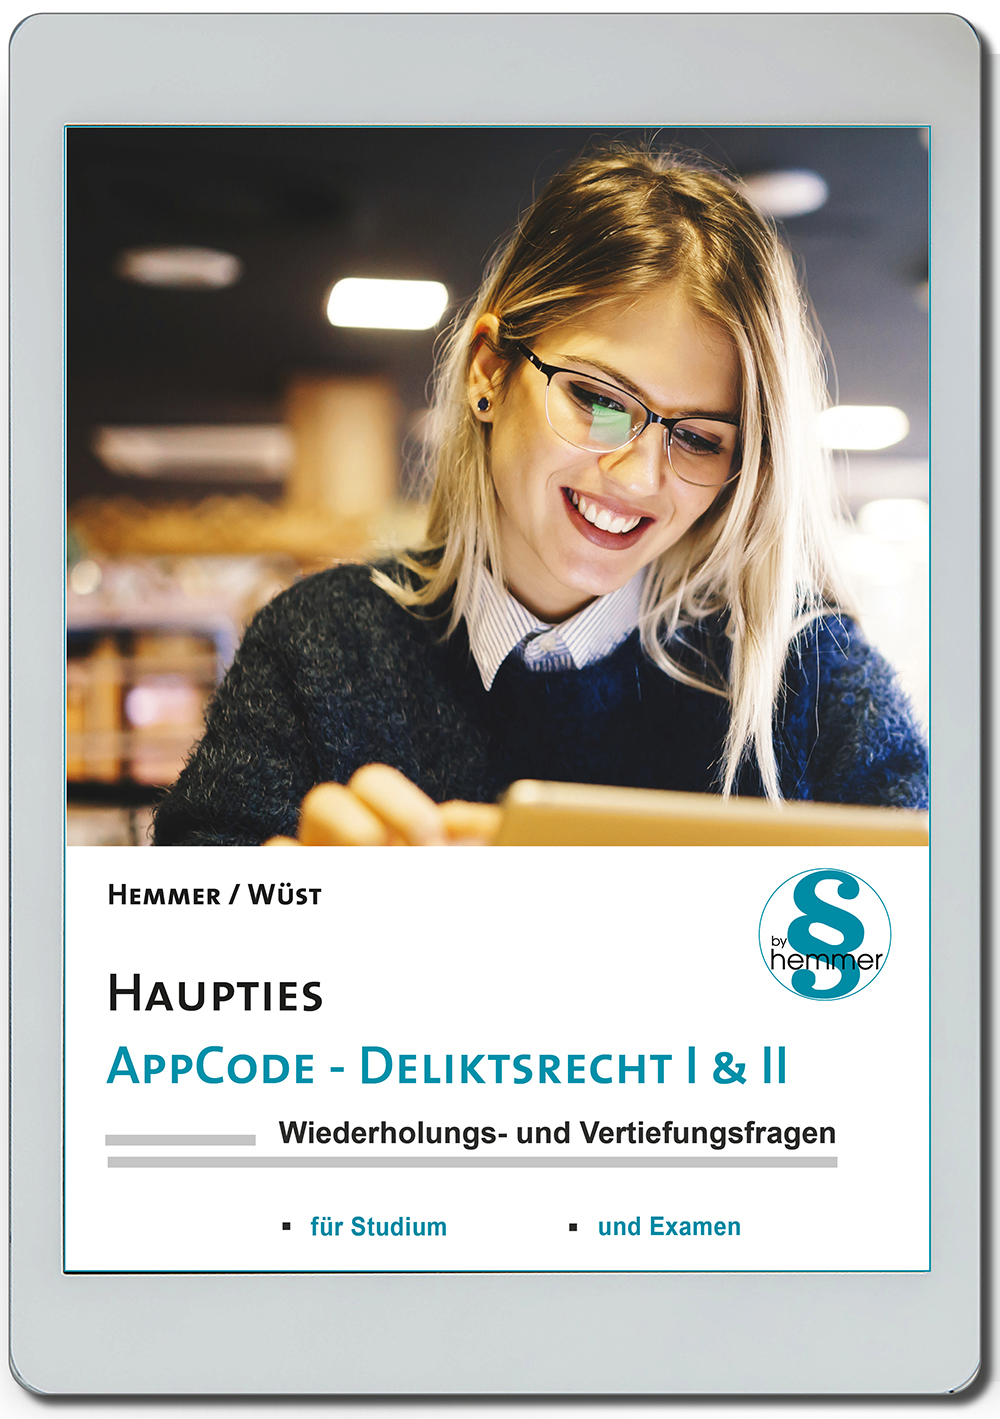 AppCode - haupties - Deliktsrecht I & II